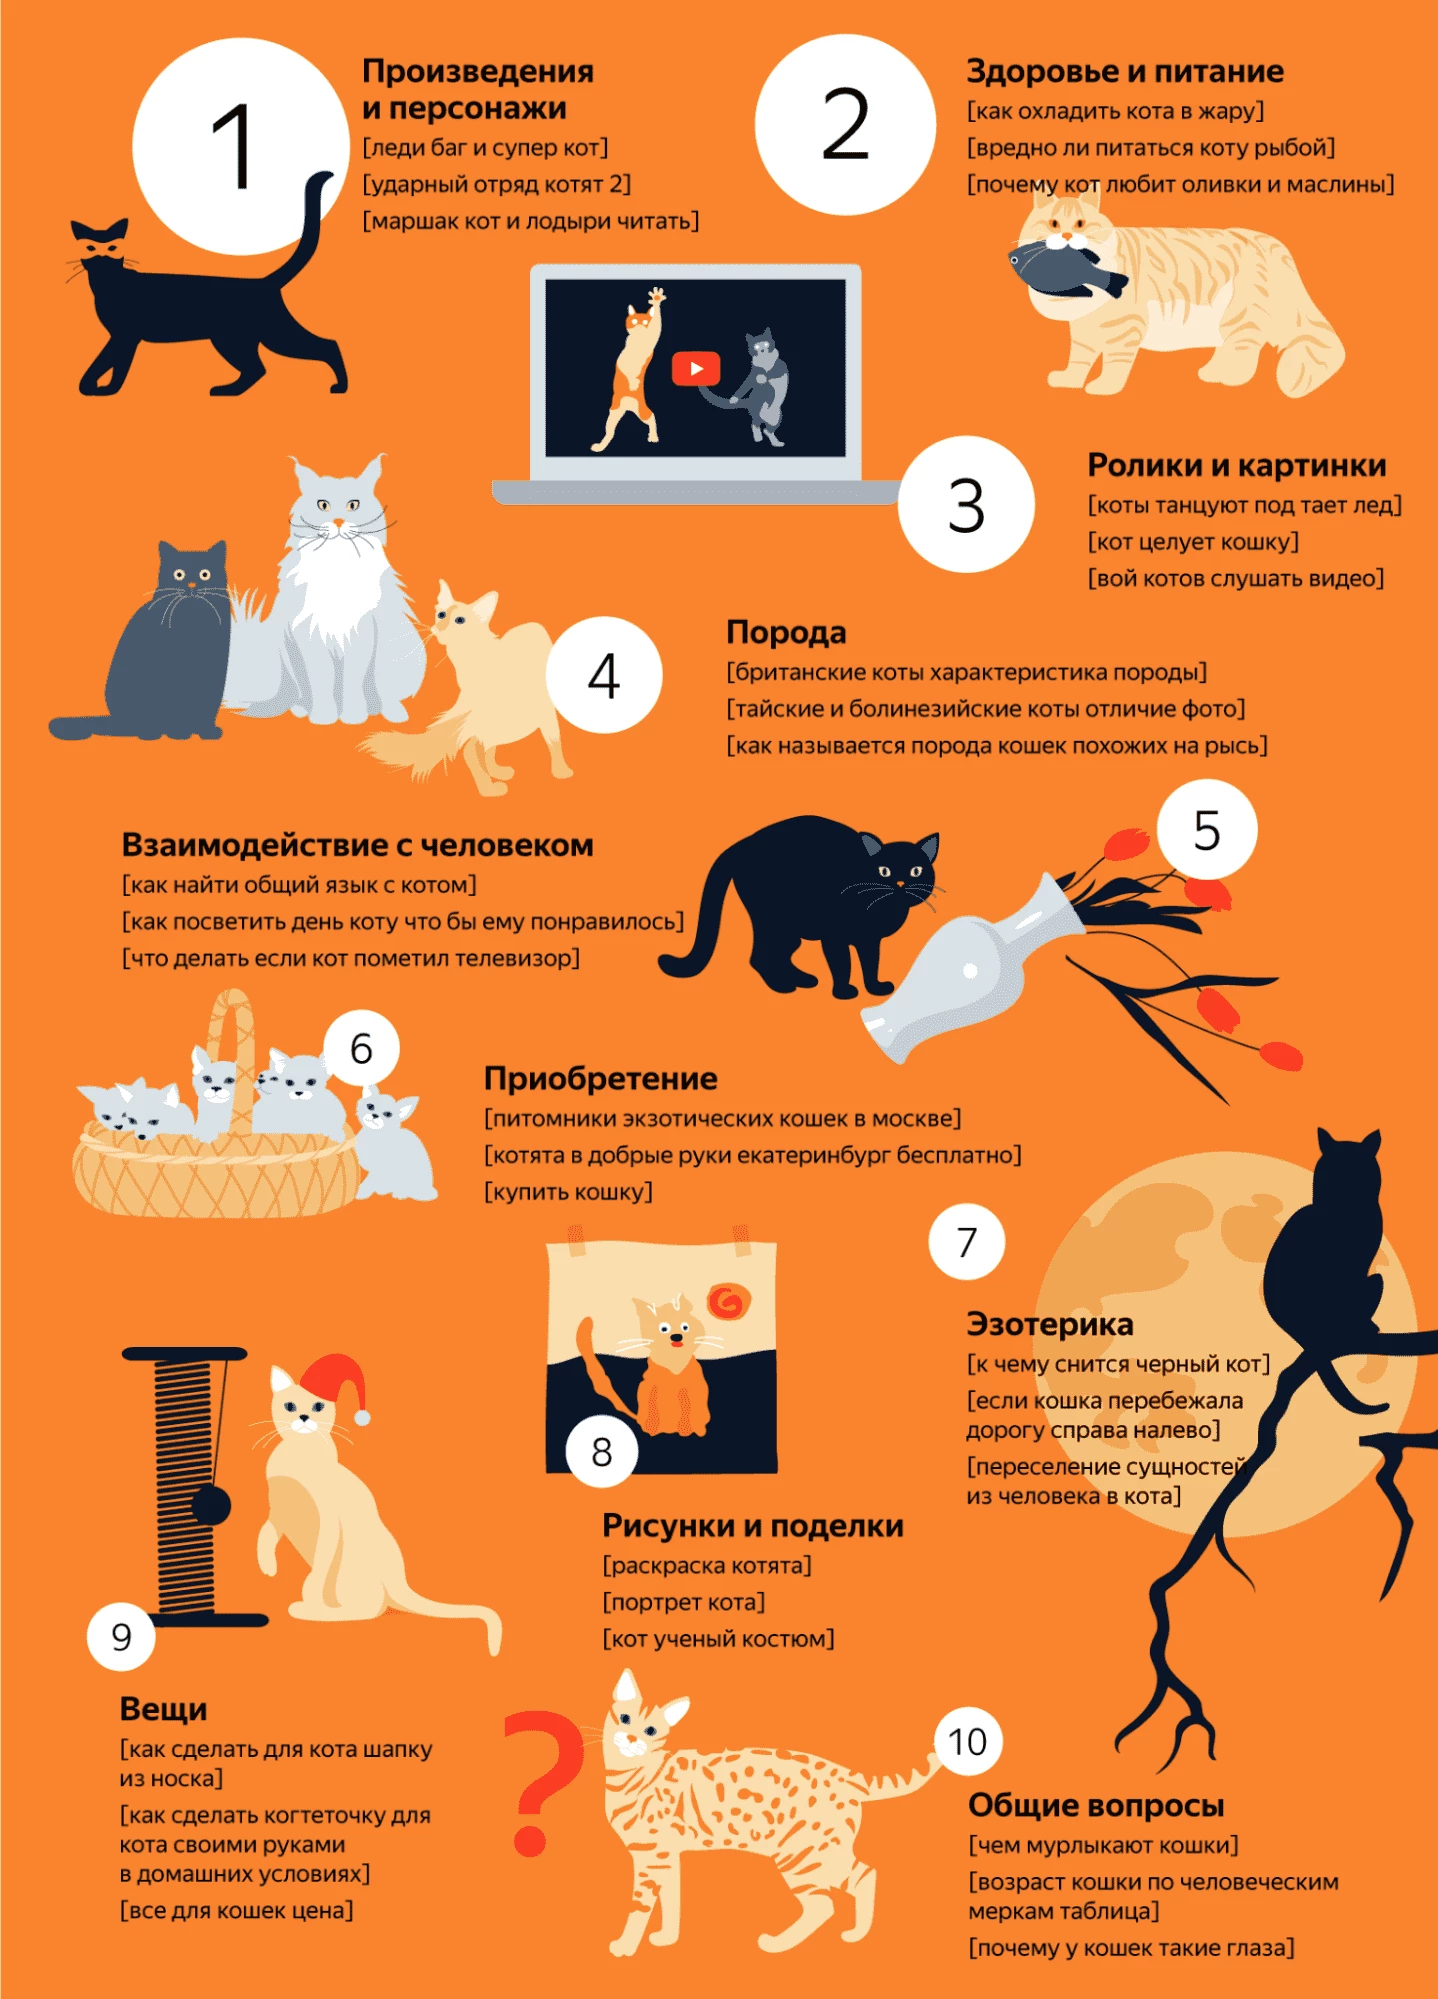 Инфографика от Яндекс-аналитики — развлекательный контент входит в ТОП-3 запросов, имеющих ключевые слова, связанные с котами